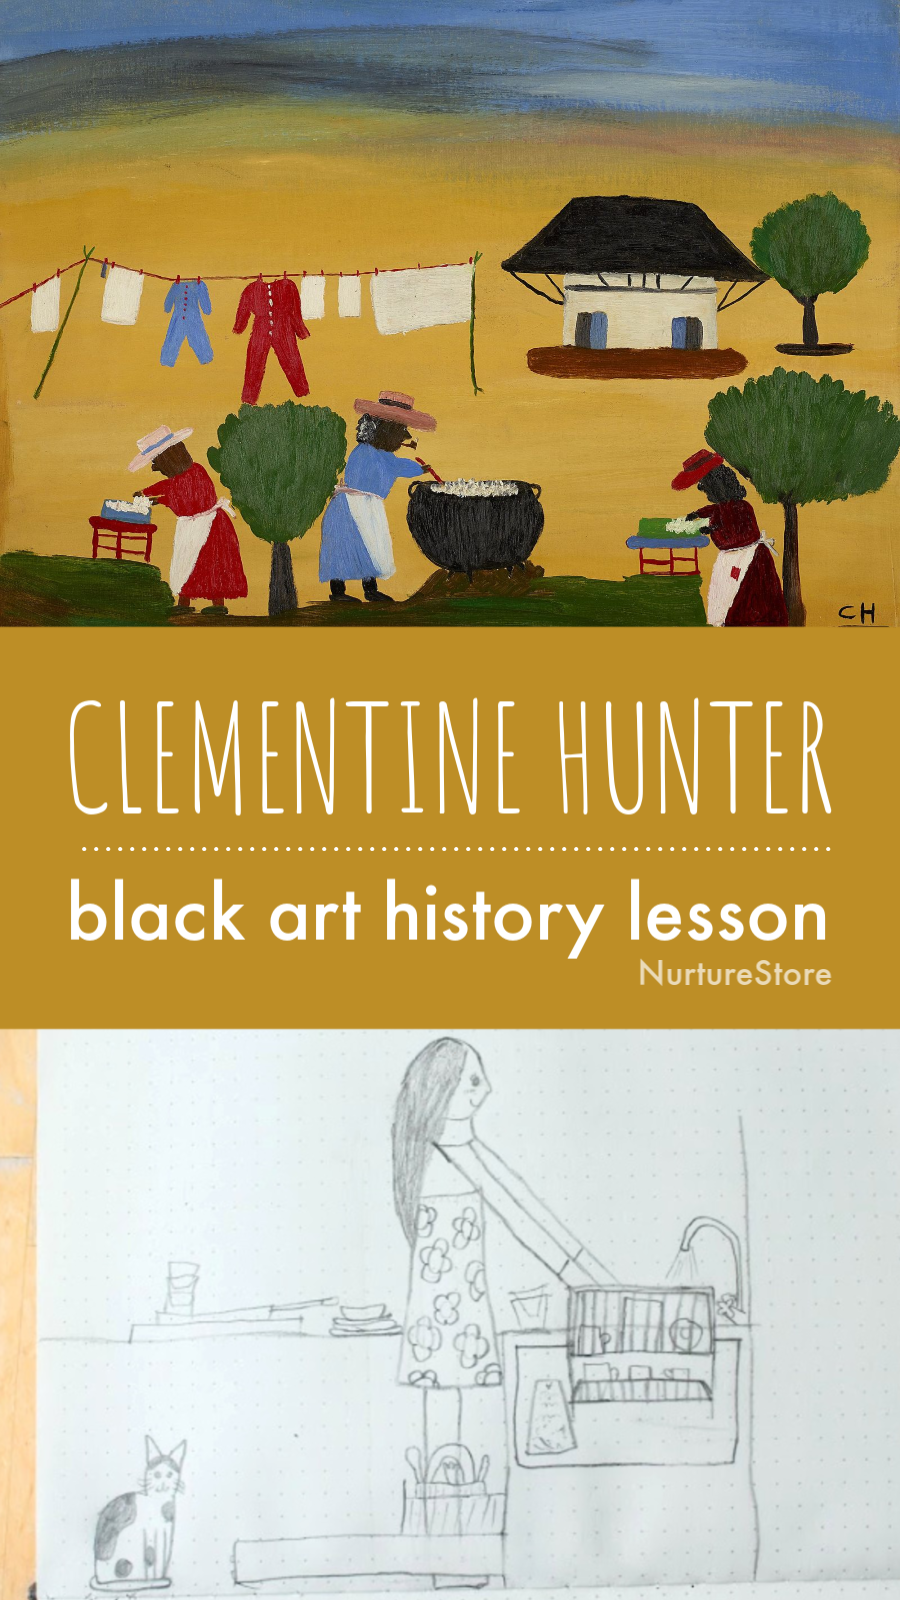 black art history lesson for children